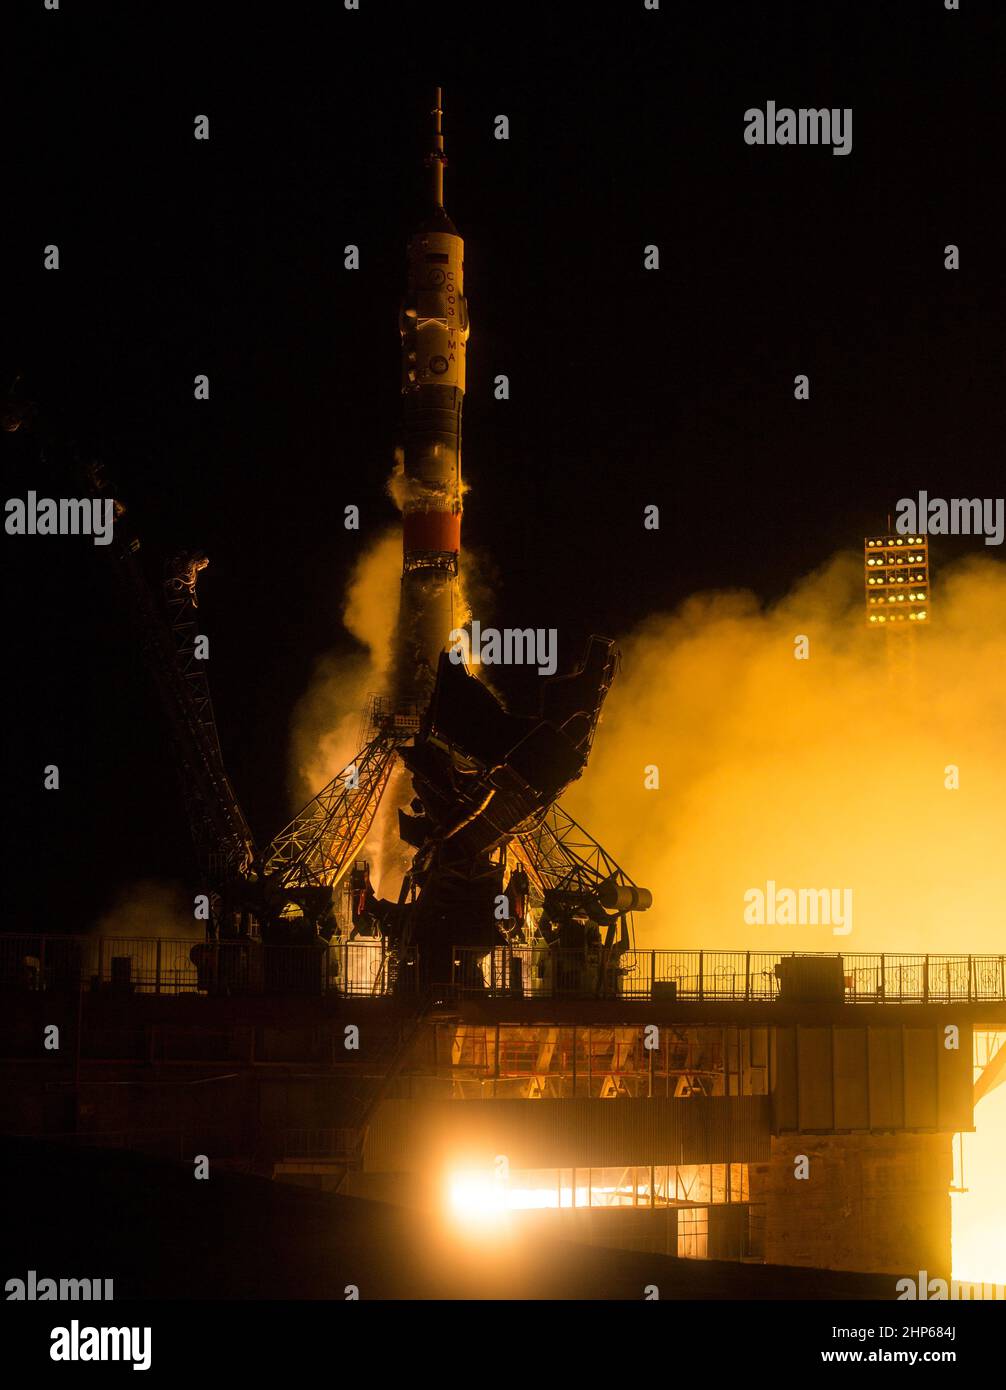 Die Sojus TMA-20M-Rakete startet am Samstag, 19. März 2016, vom Kosmodrom Baikonur in Kasachstan mit Expedition 47 Sojus-Kommandant Alexey Ovchinin von Roskosmos, Flugingenieur Jeff Williams von der NASA, Und der Flugingenieur Oleg Skripochka von Roskosmos in die Umlaufbahn, um ihre fünfeinhalb-monatige Mission auf der Internationalen Raumstation zu beginnen. Stockfoto